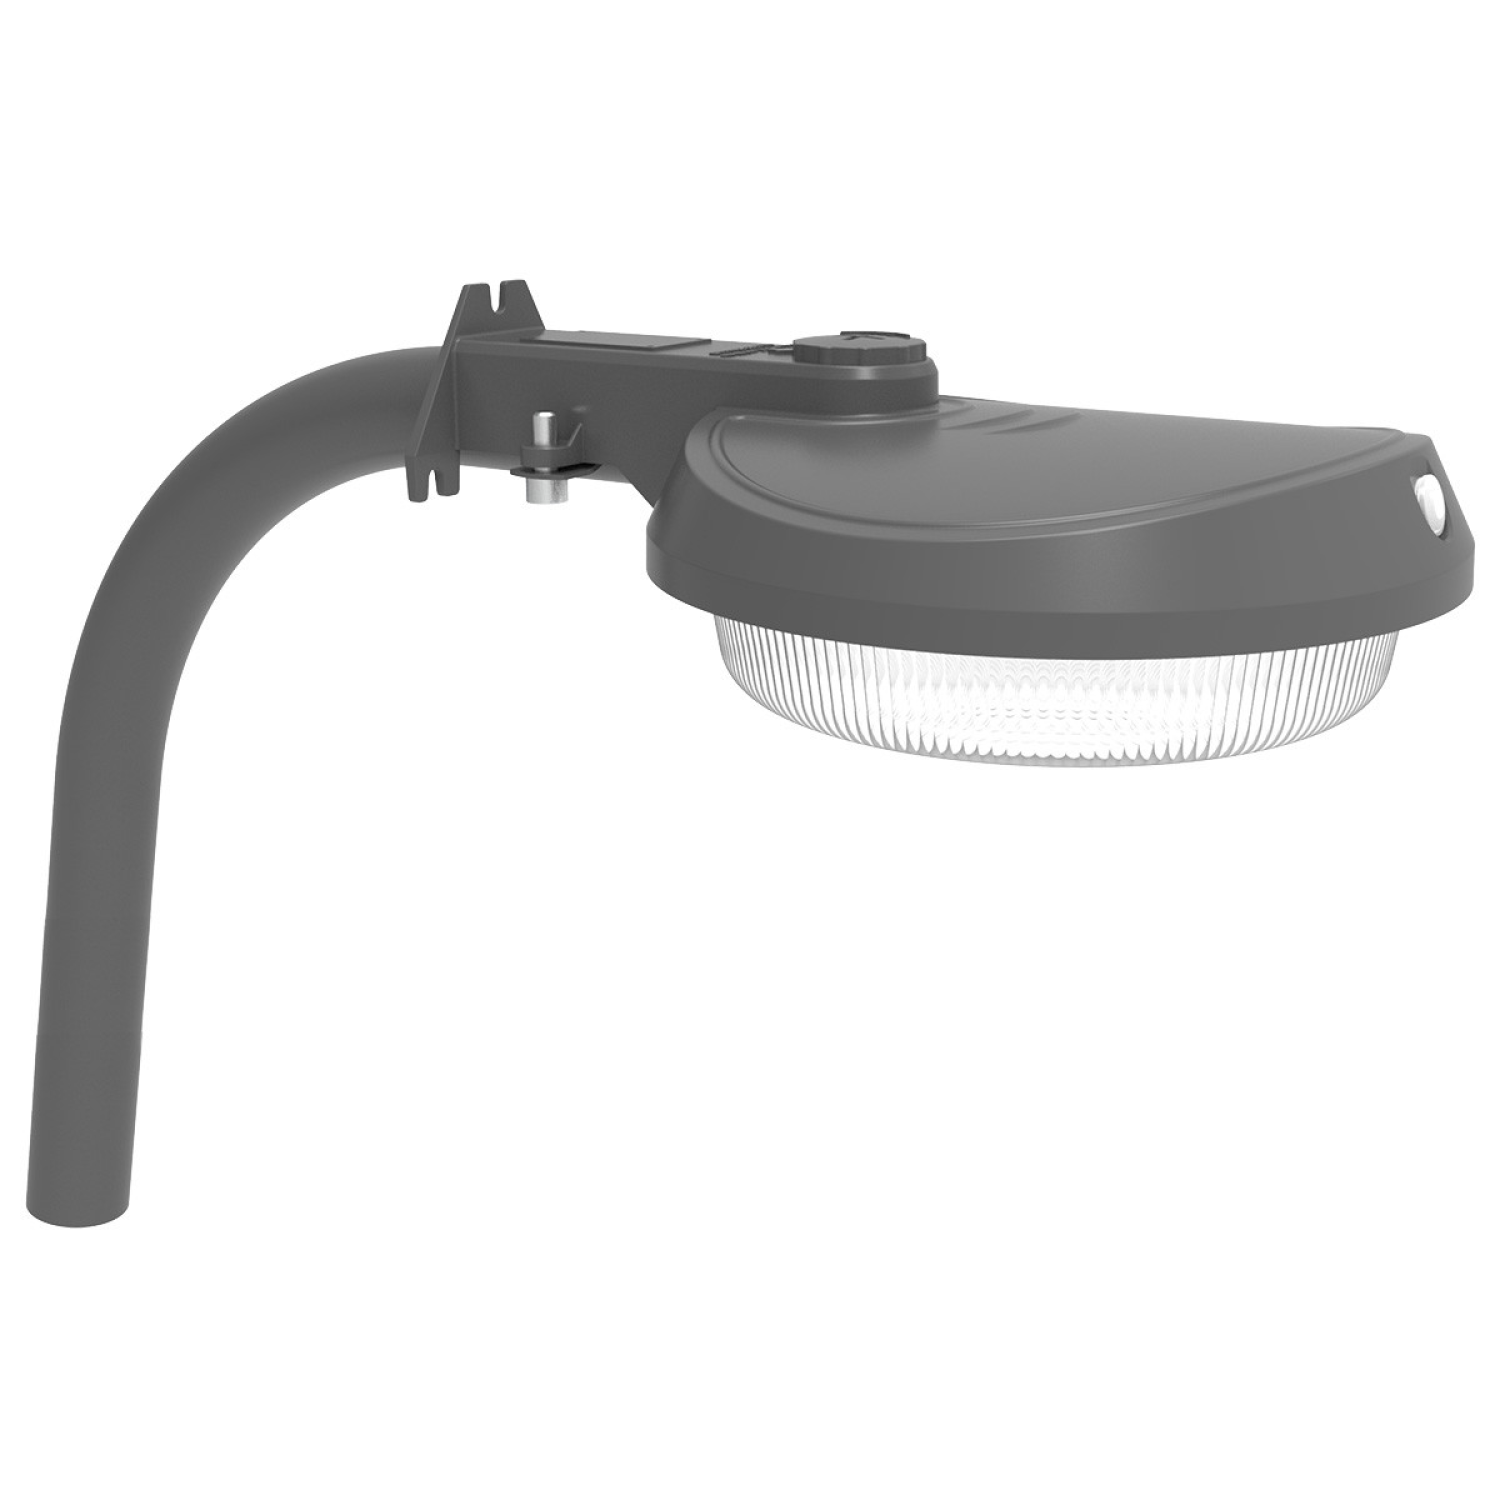 Mounting Arm Kit for Black LED Barn Light